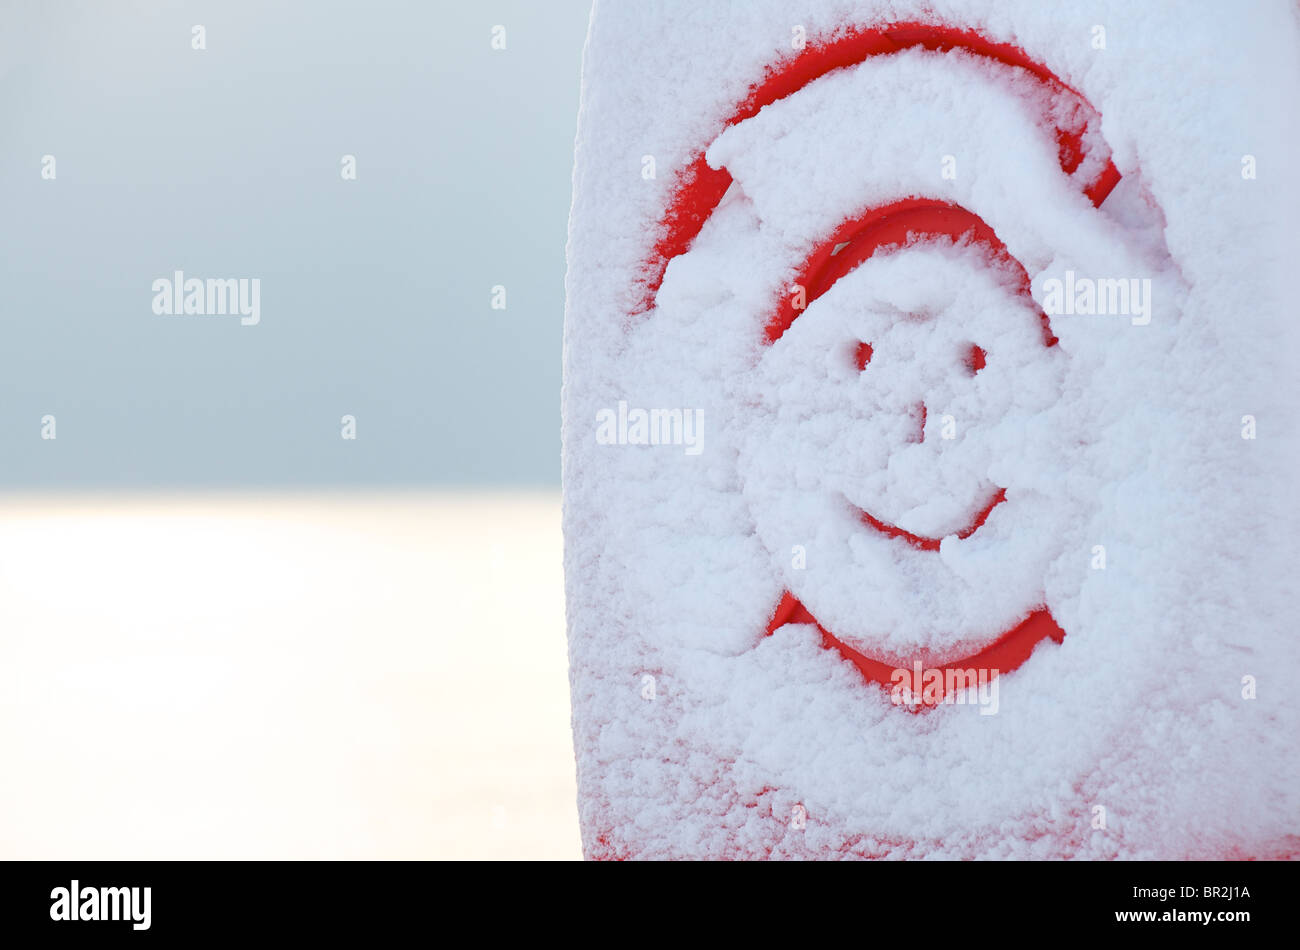 Smiley dessiné dans la neige fraîche sur les appareils de sauvetage à côté de la mer Banque D'Images